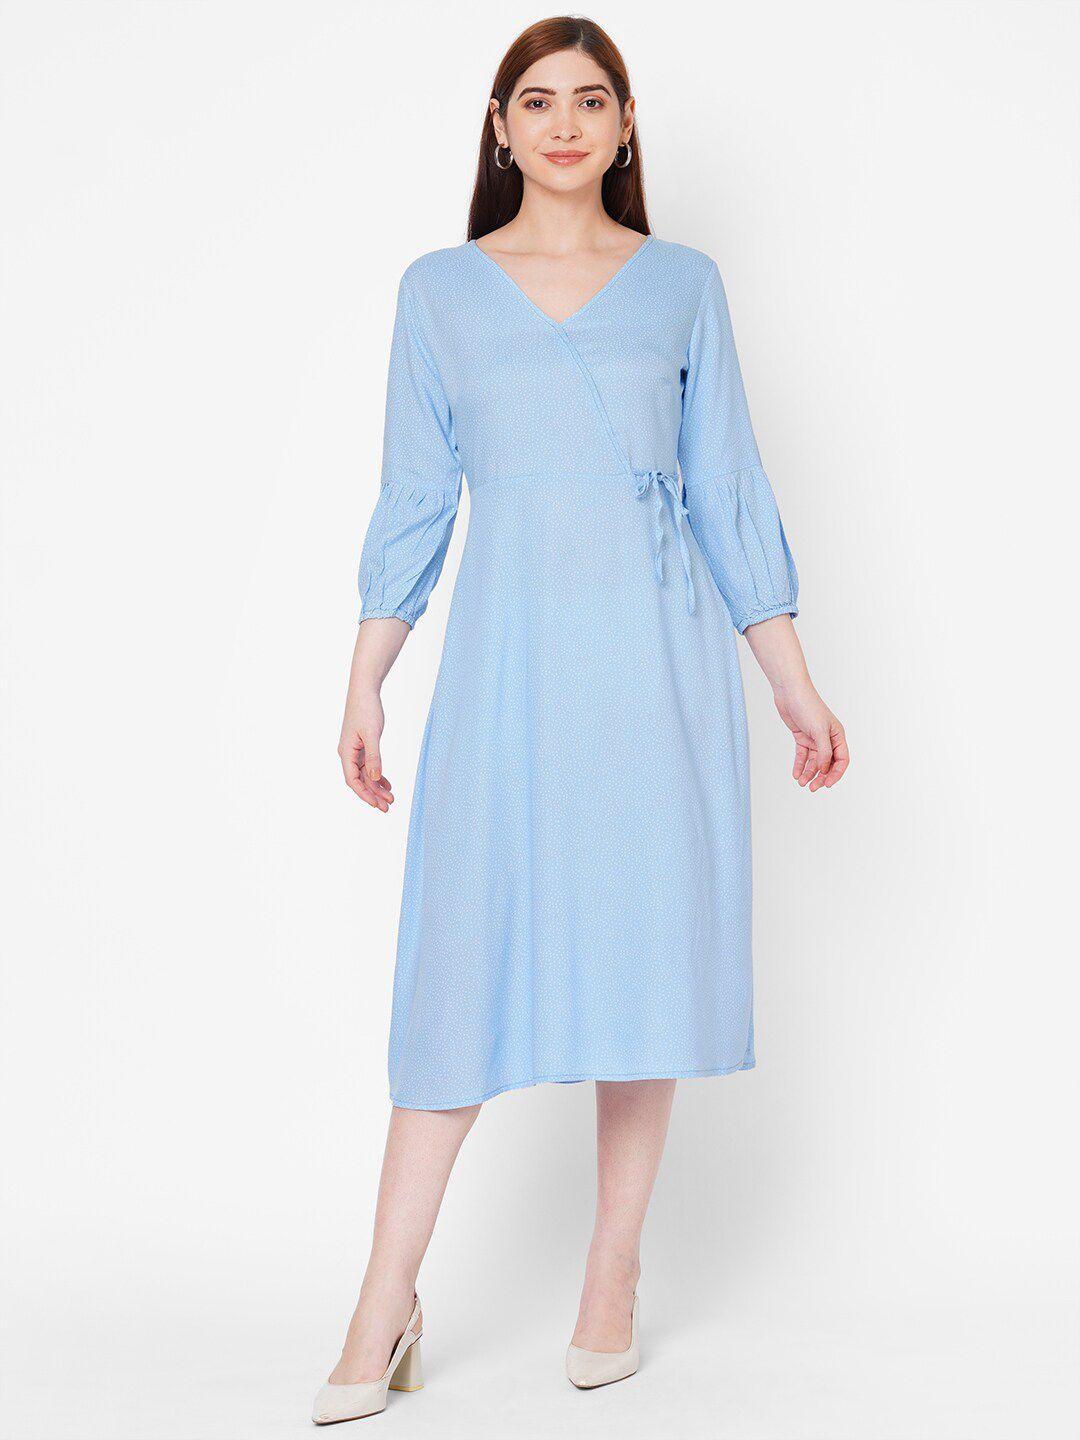 109f-blue-&-white-midi-dress